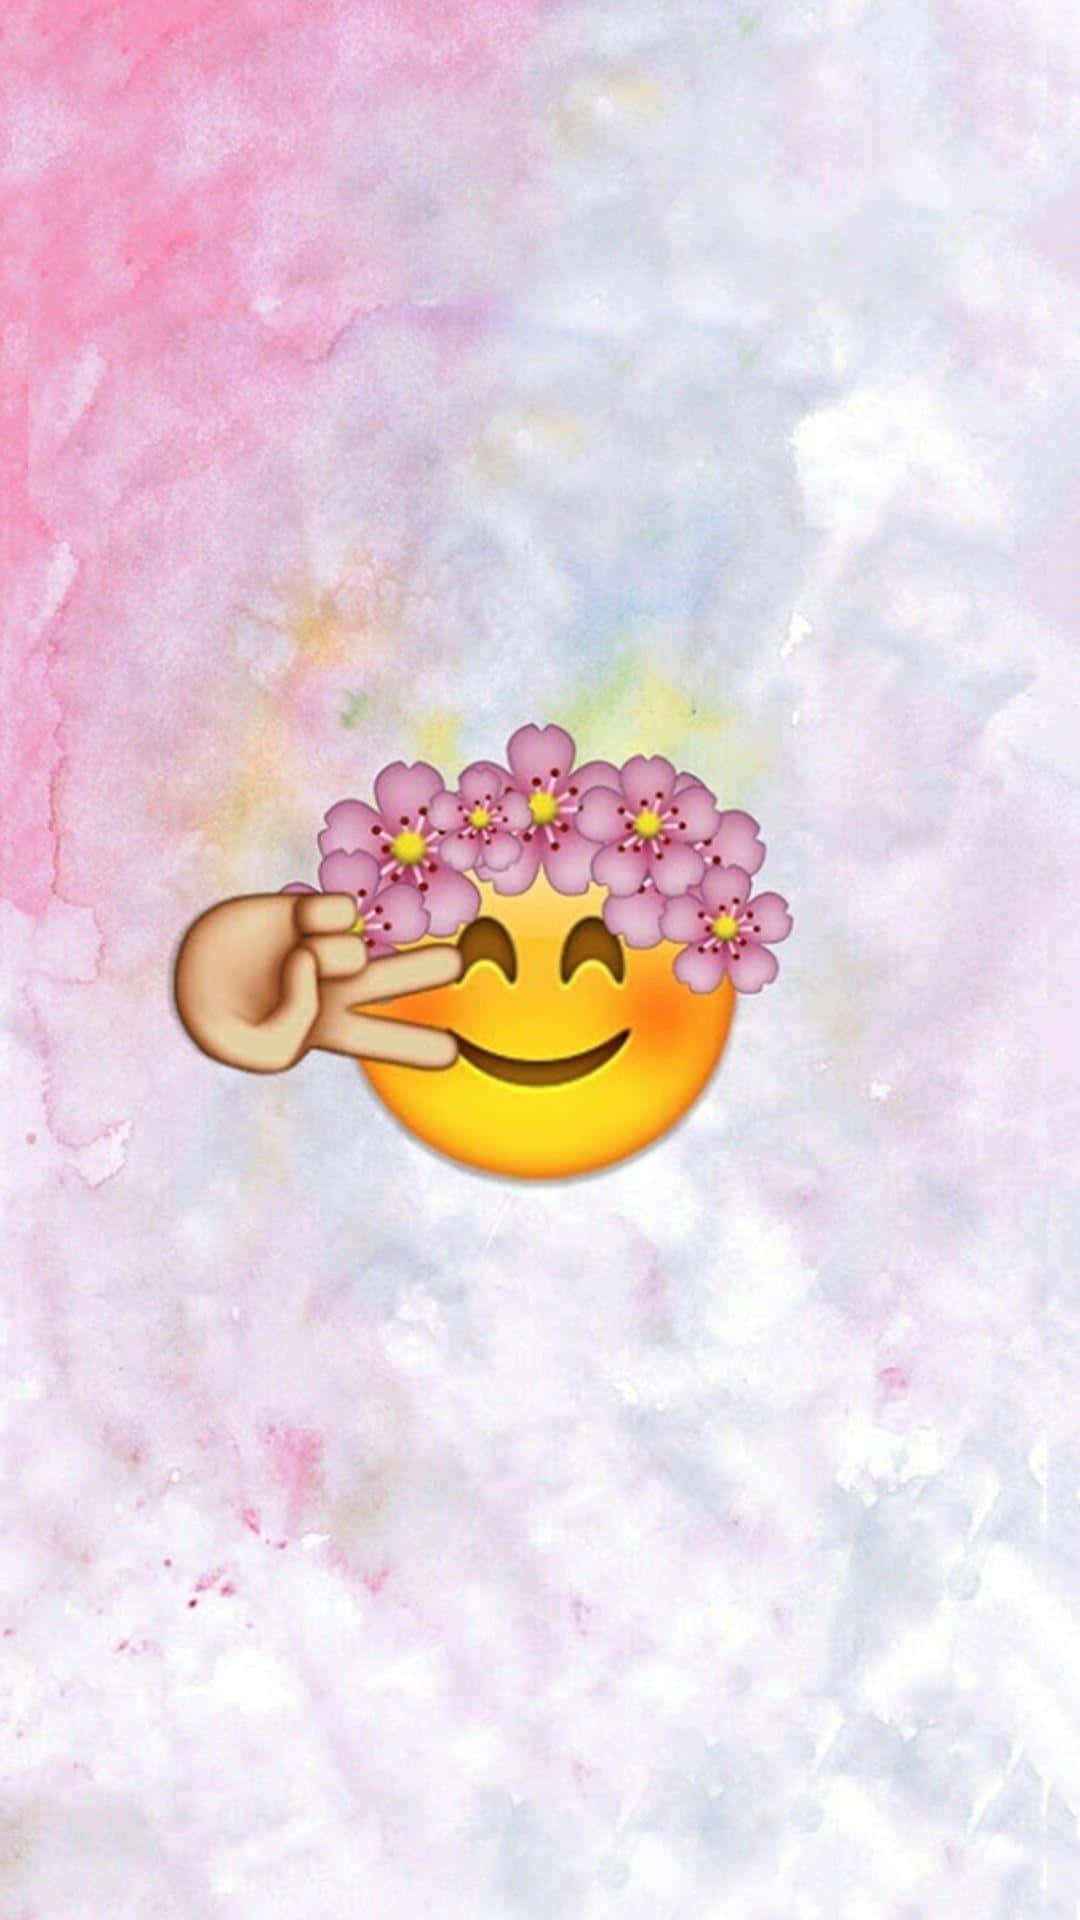 Cute Emoji Making A Peace Sign Wallpaper